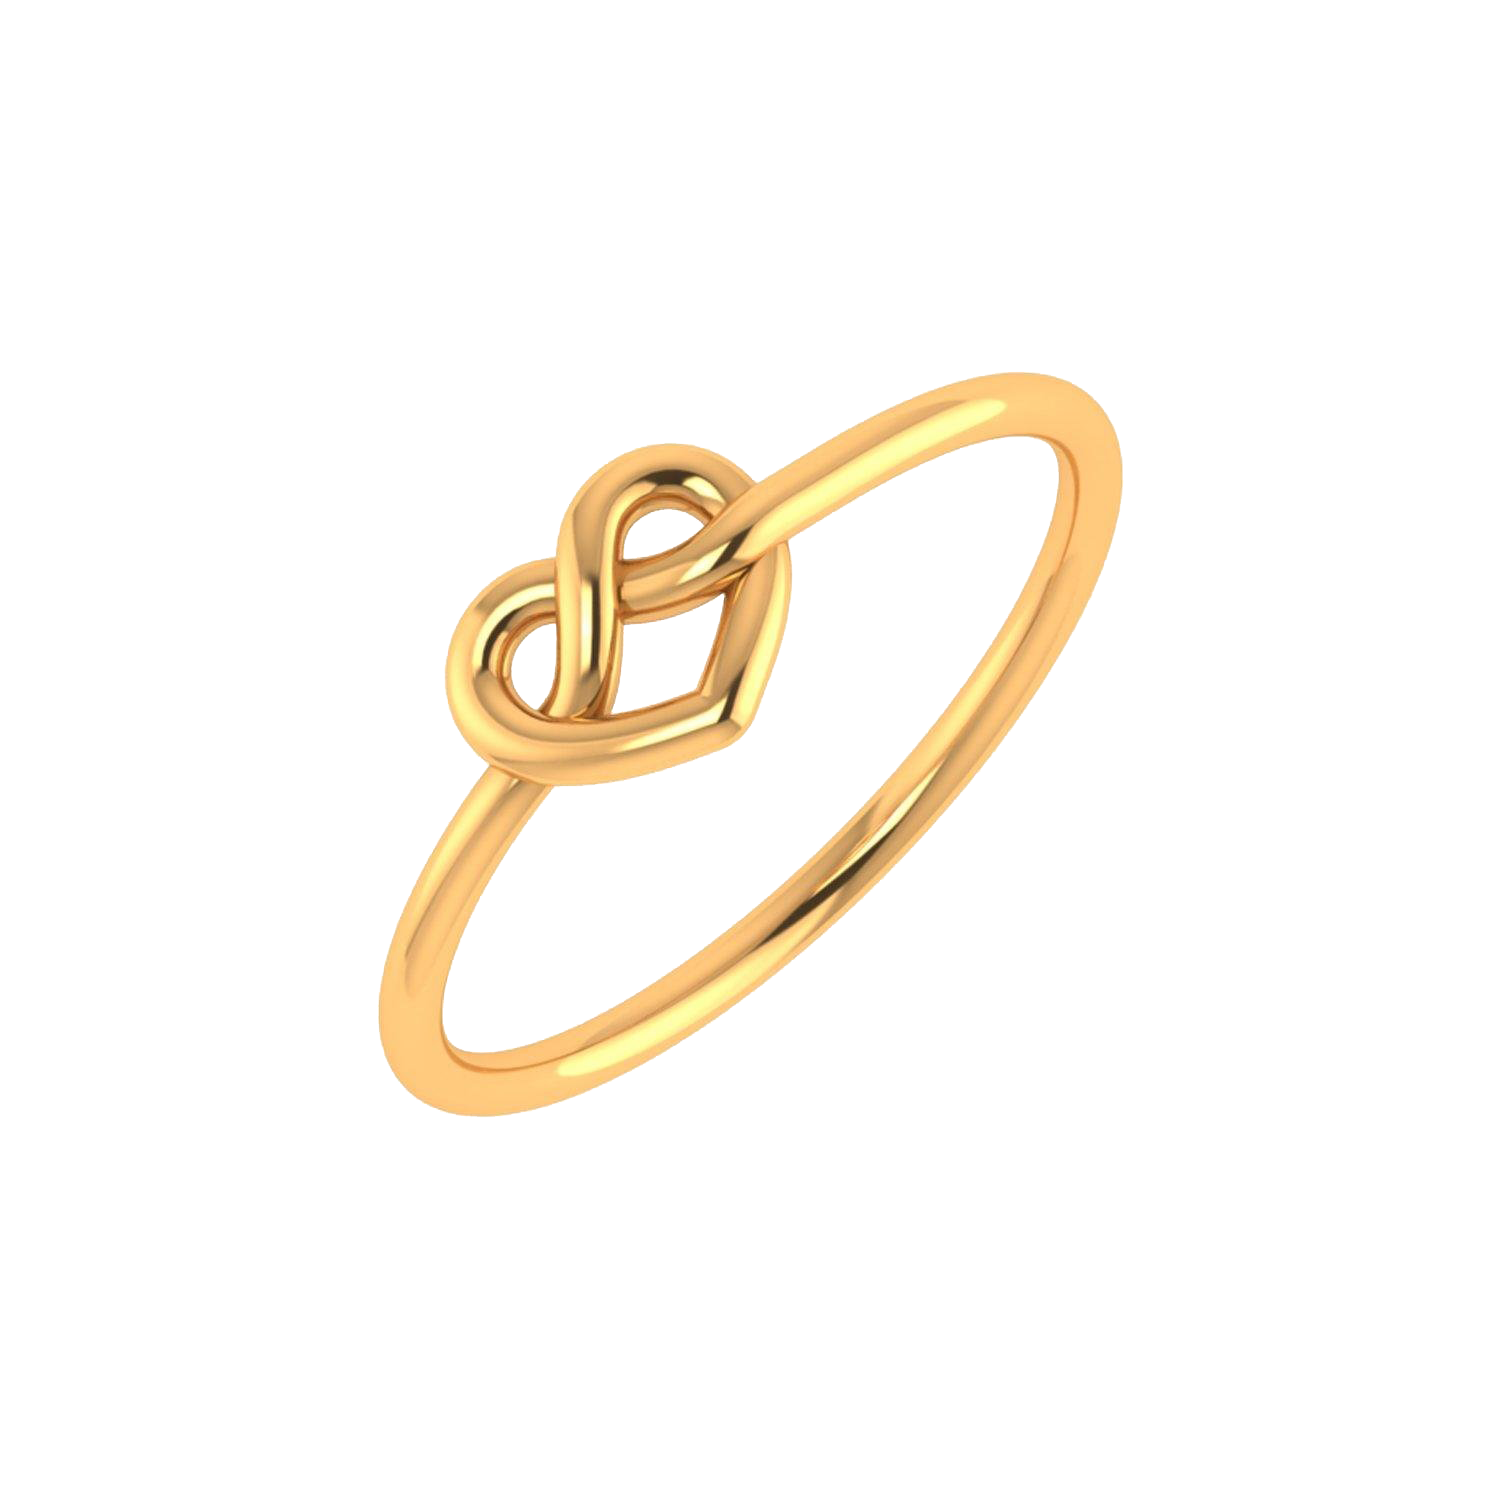 Imagem de download de anel de ouro de noivado